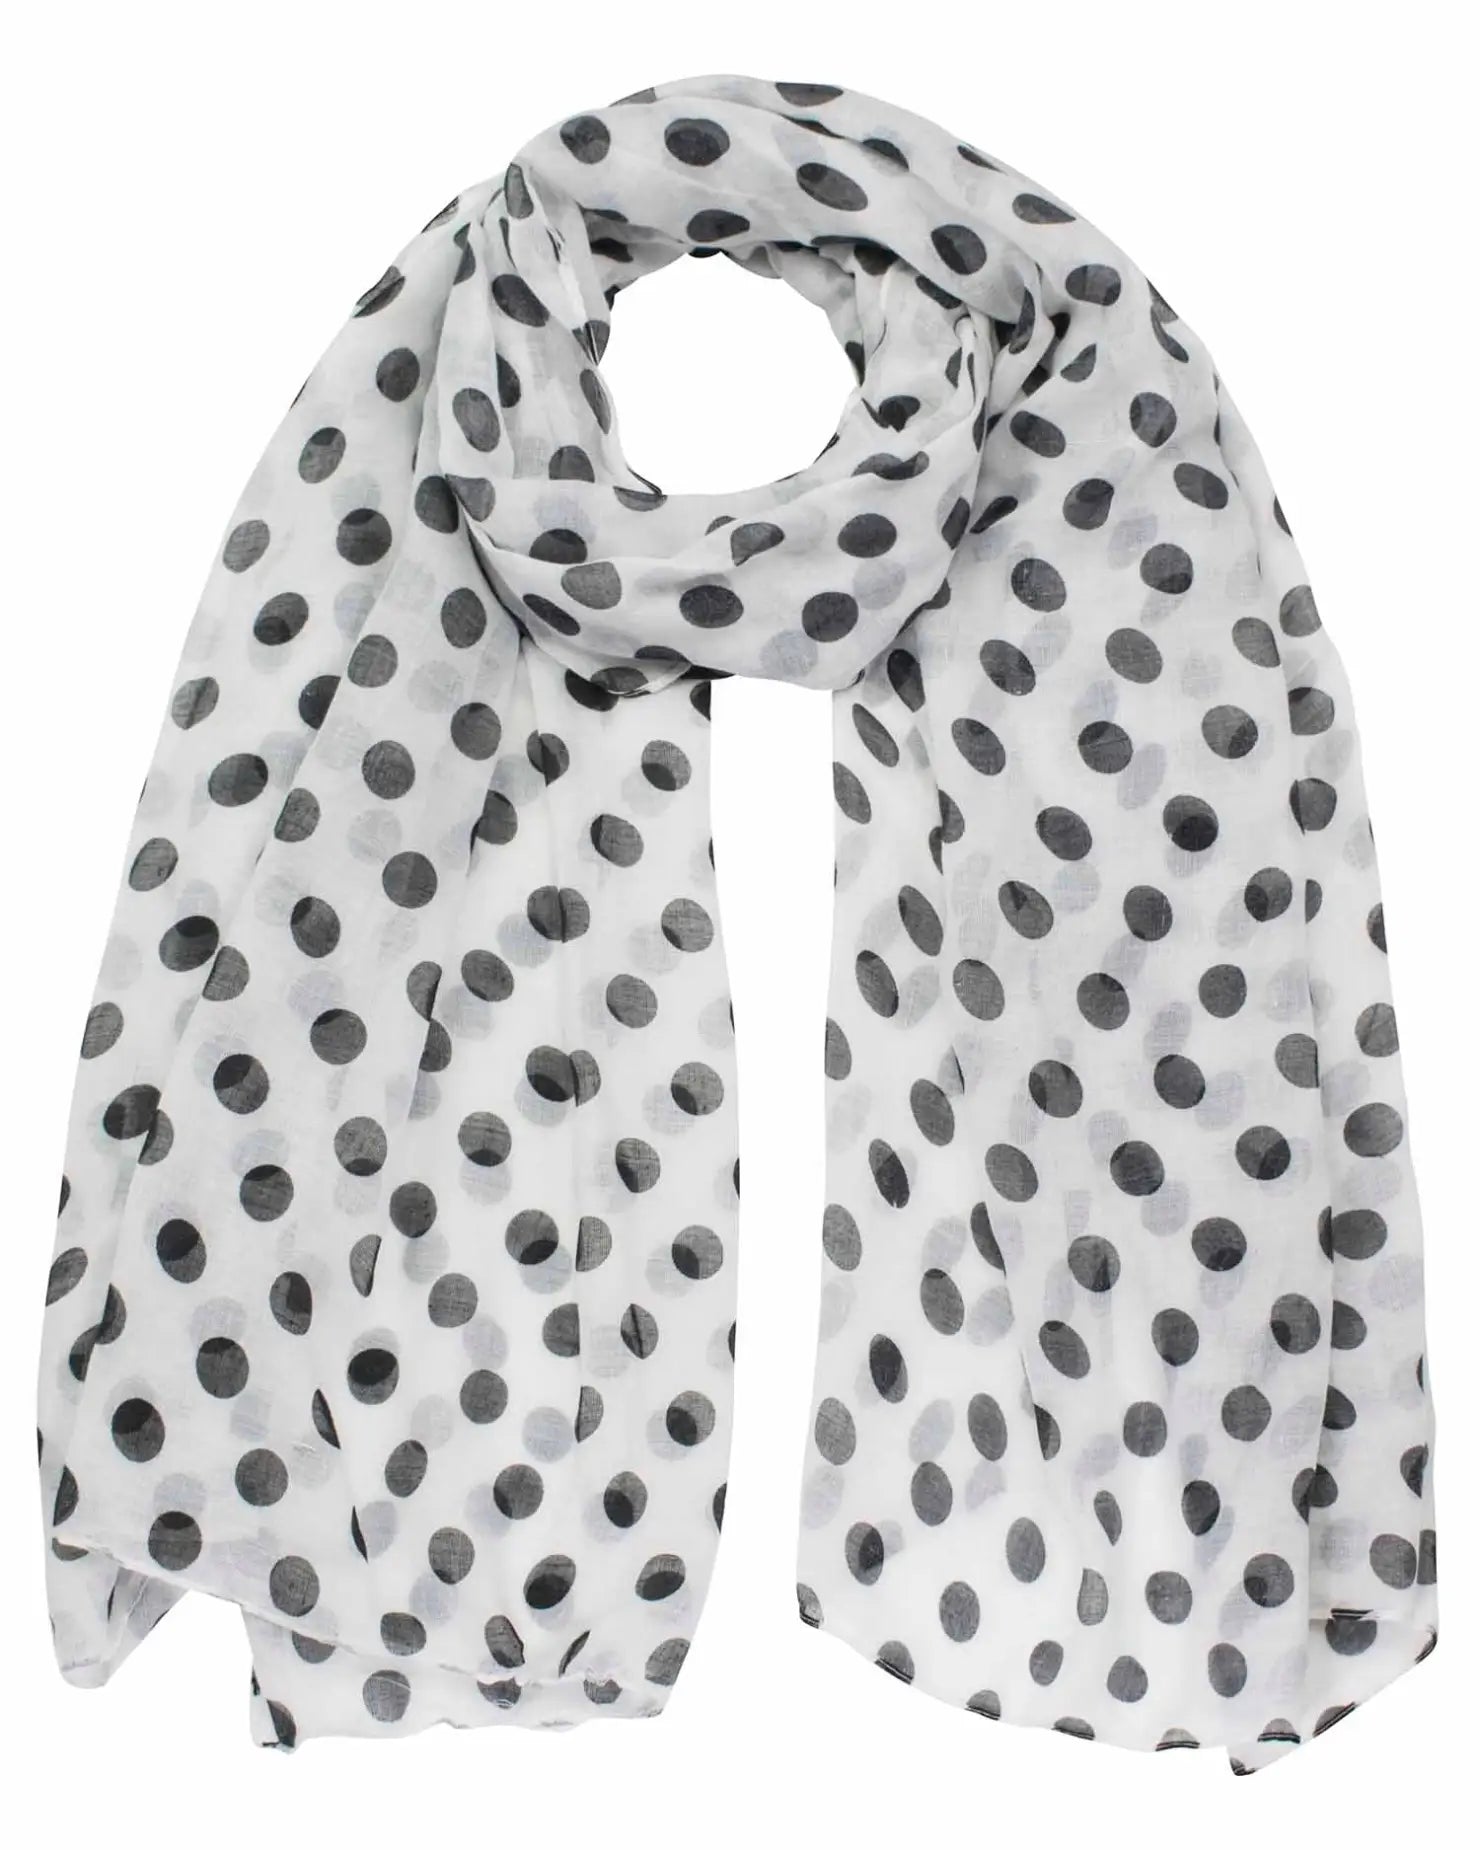 Retro polka dot oversized scarf for women